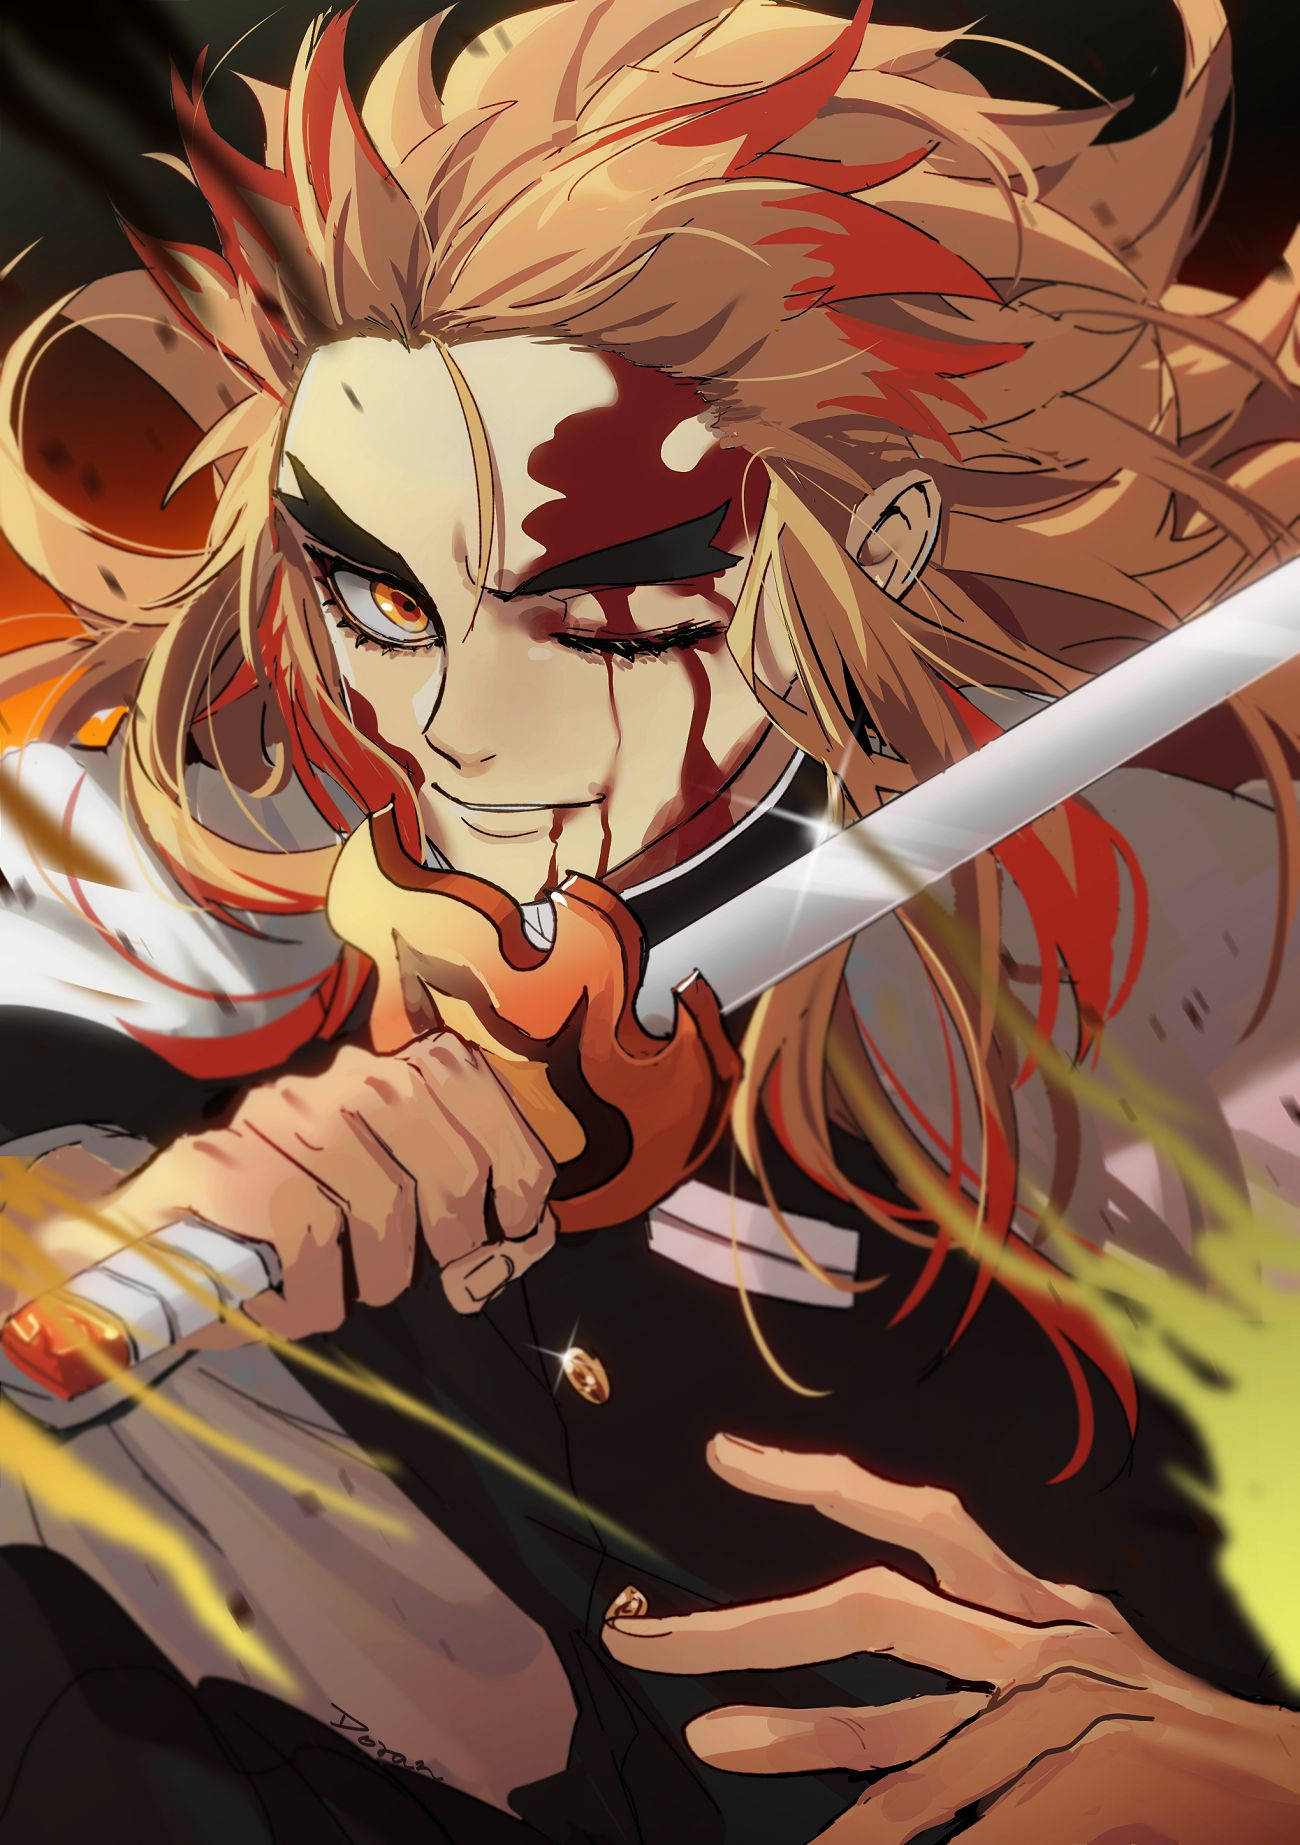 Kyoujurou Rengoku gears up for battle Wallpaper